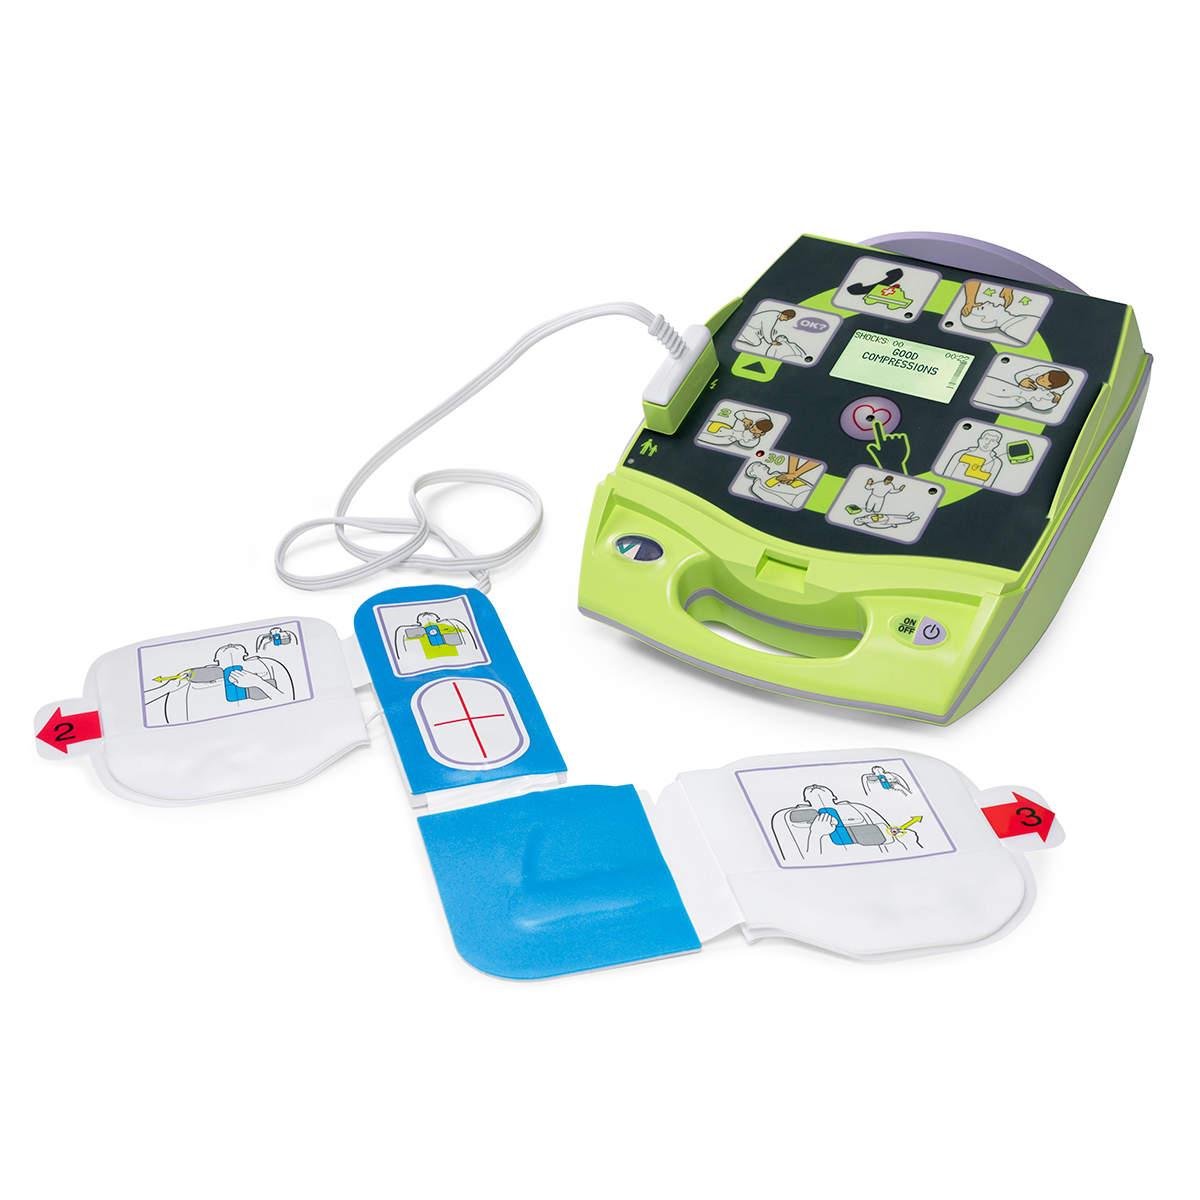 Zoll® AED Plus Semi-Automatic Defibrillator